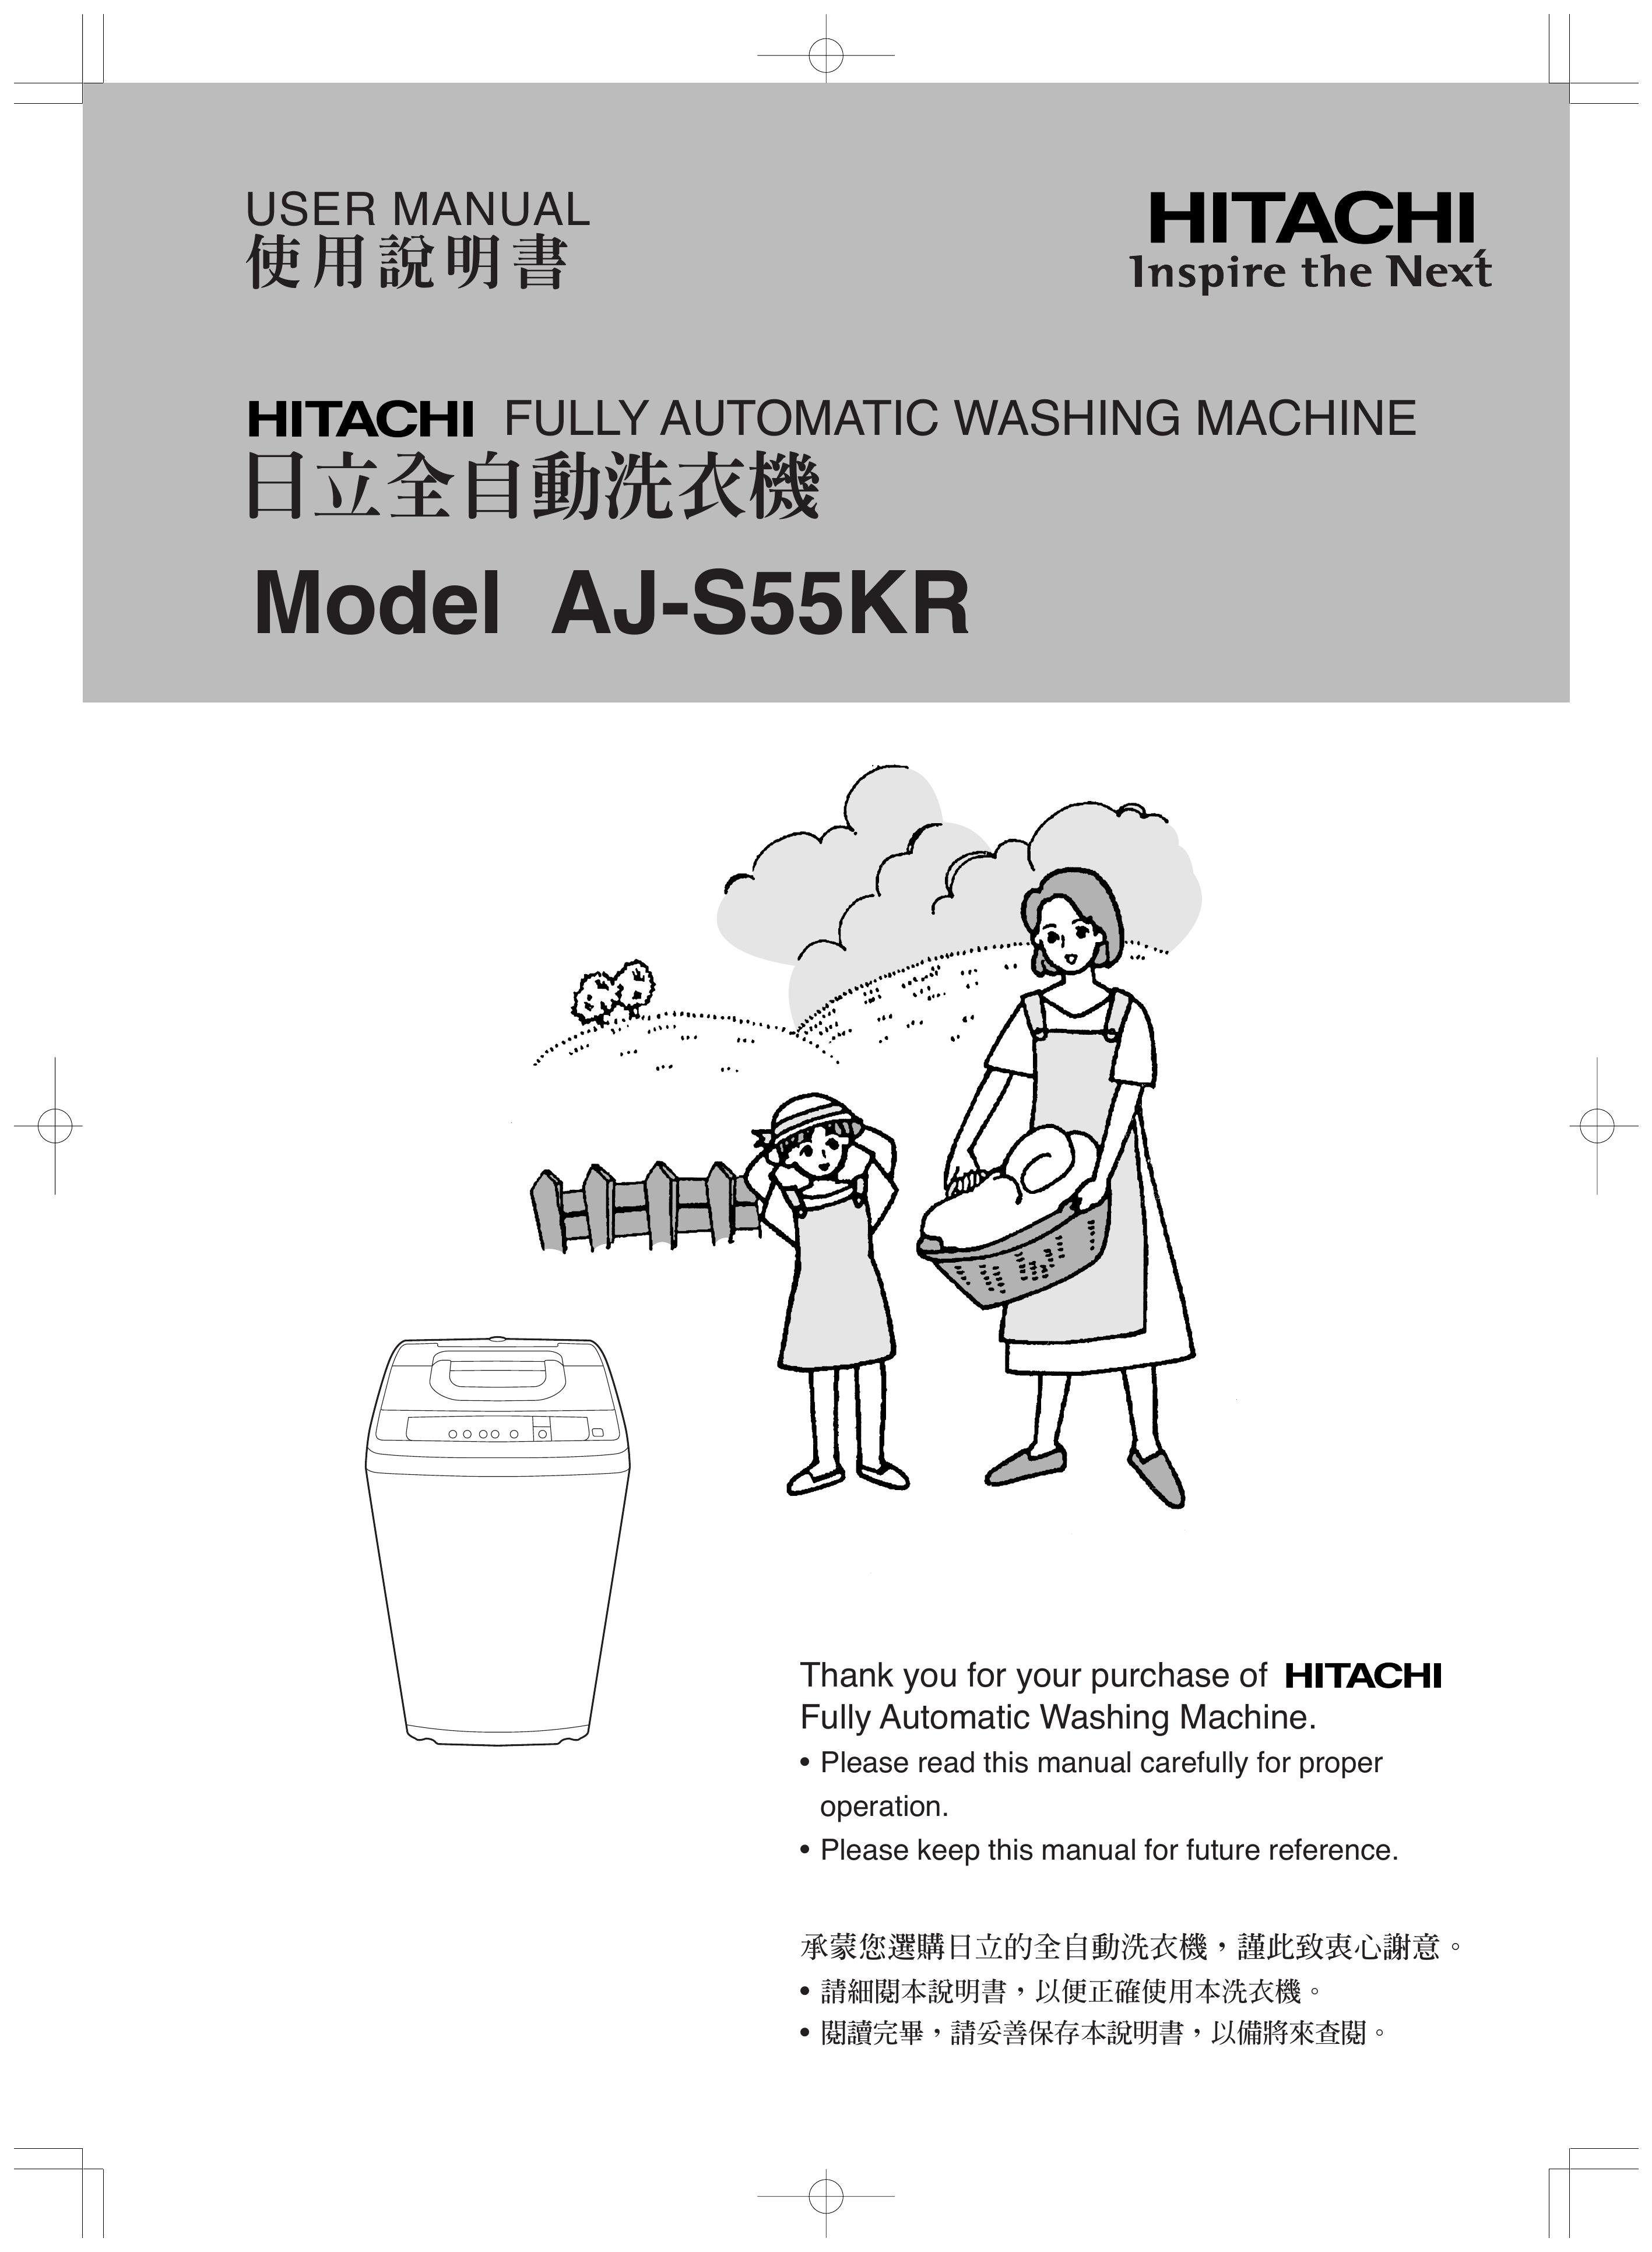 Hitachi AJ-S55KR Washer User Manual